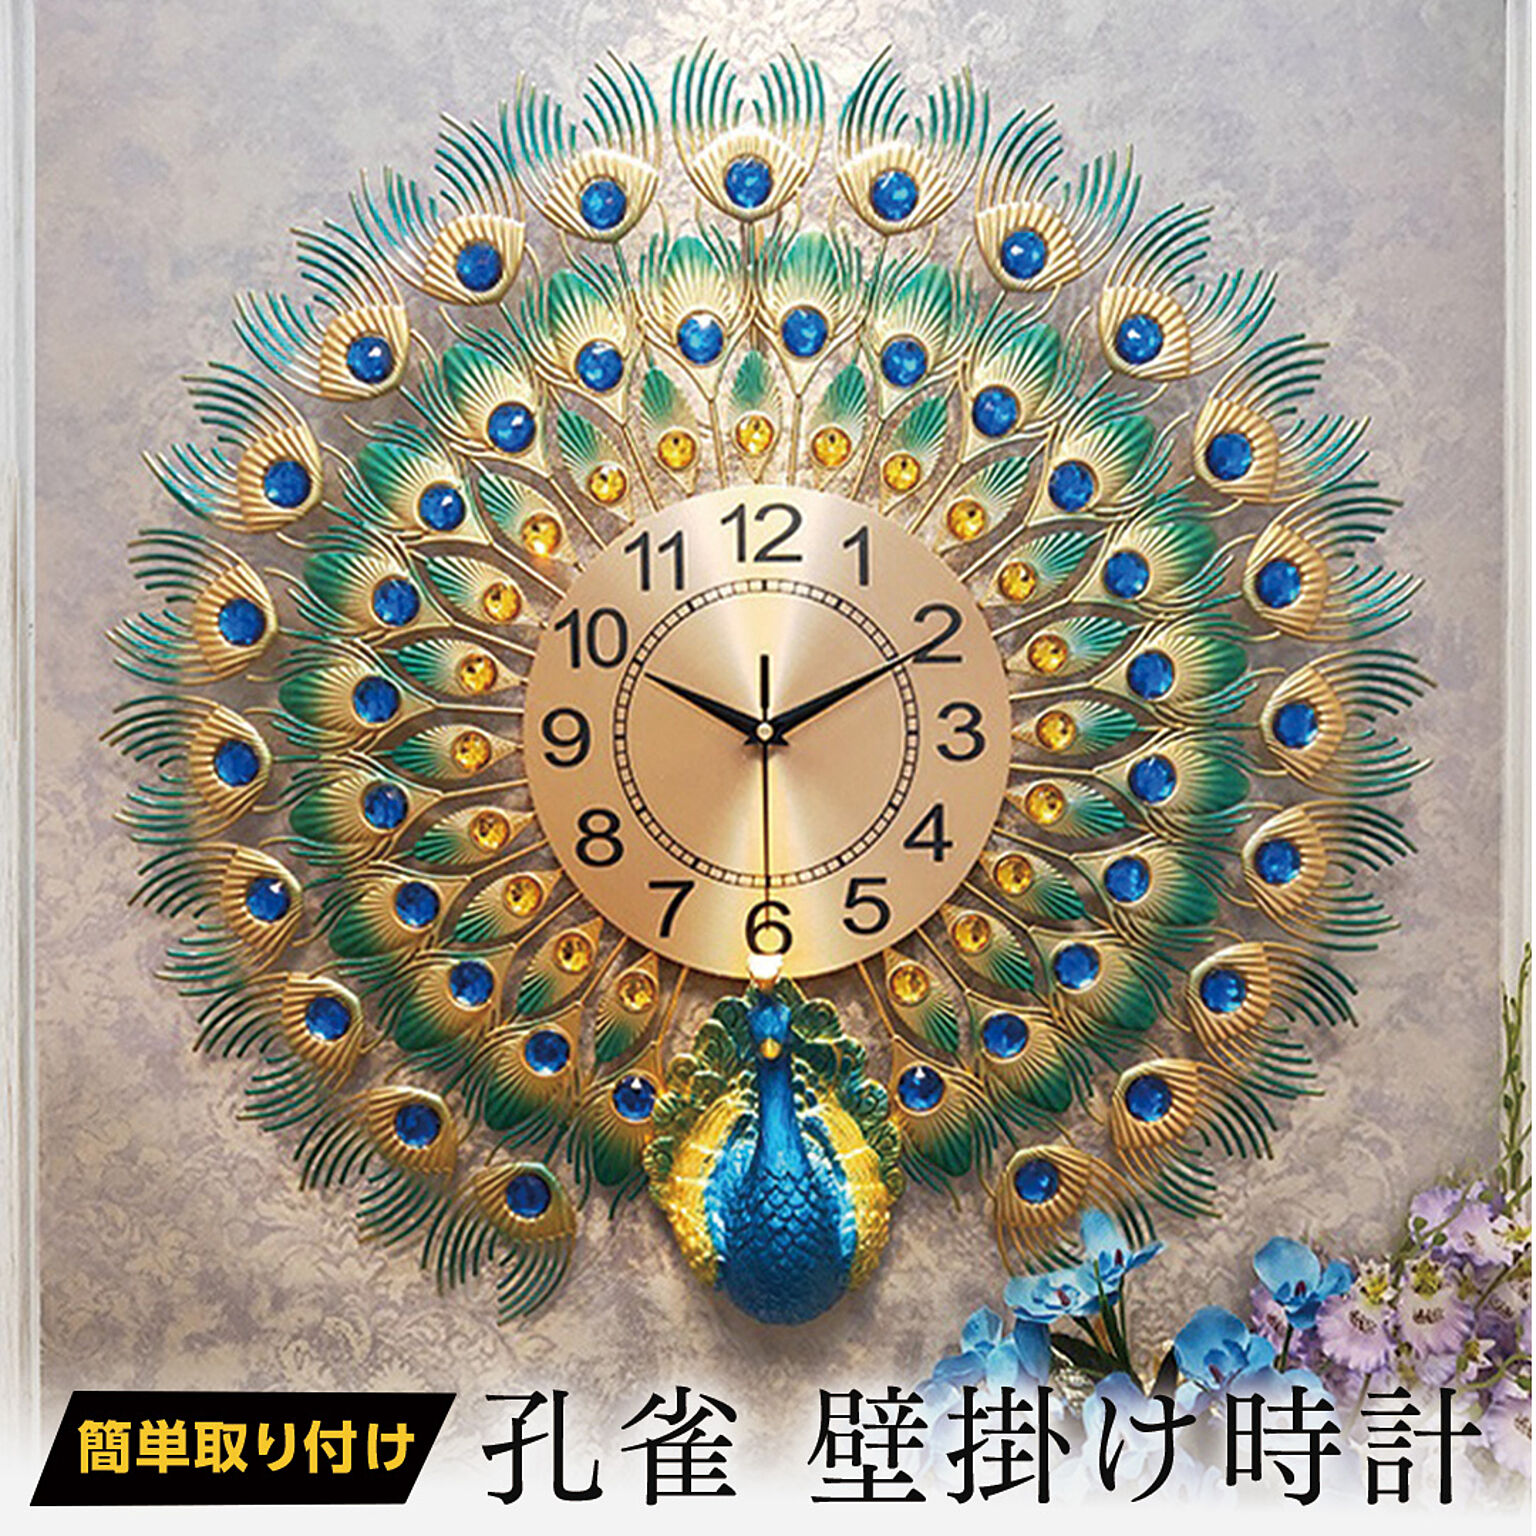 60cm 特大 孔雀 壁掛け時計 シルバー ブルーストーン 孔雀 デザイナーズ 掛時計フラワー 時計 おしゃれ エレガント クラシック リビング時計 ウォールクロック 時計